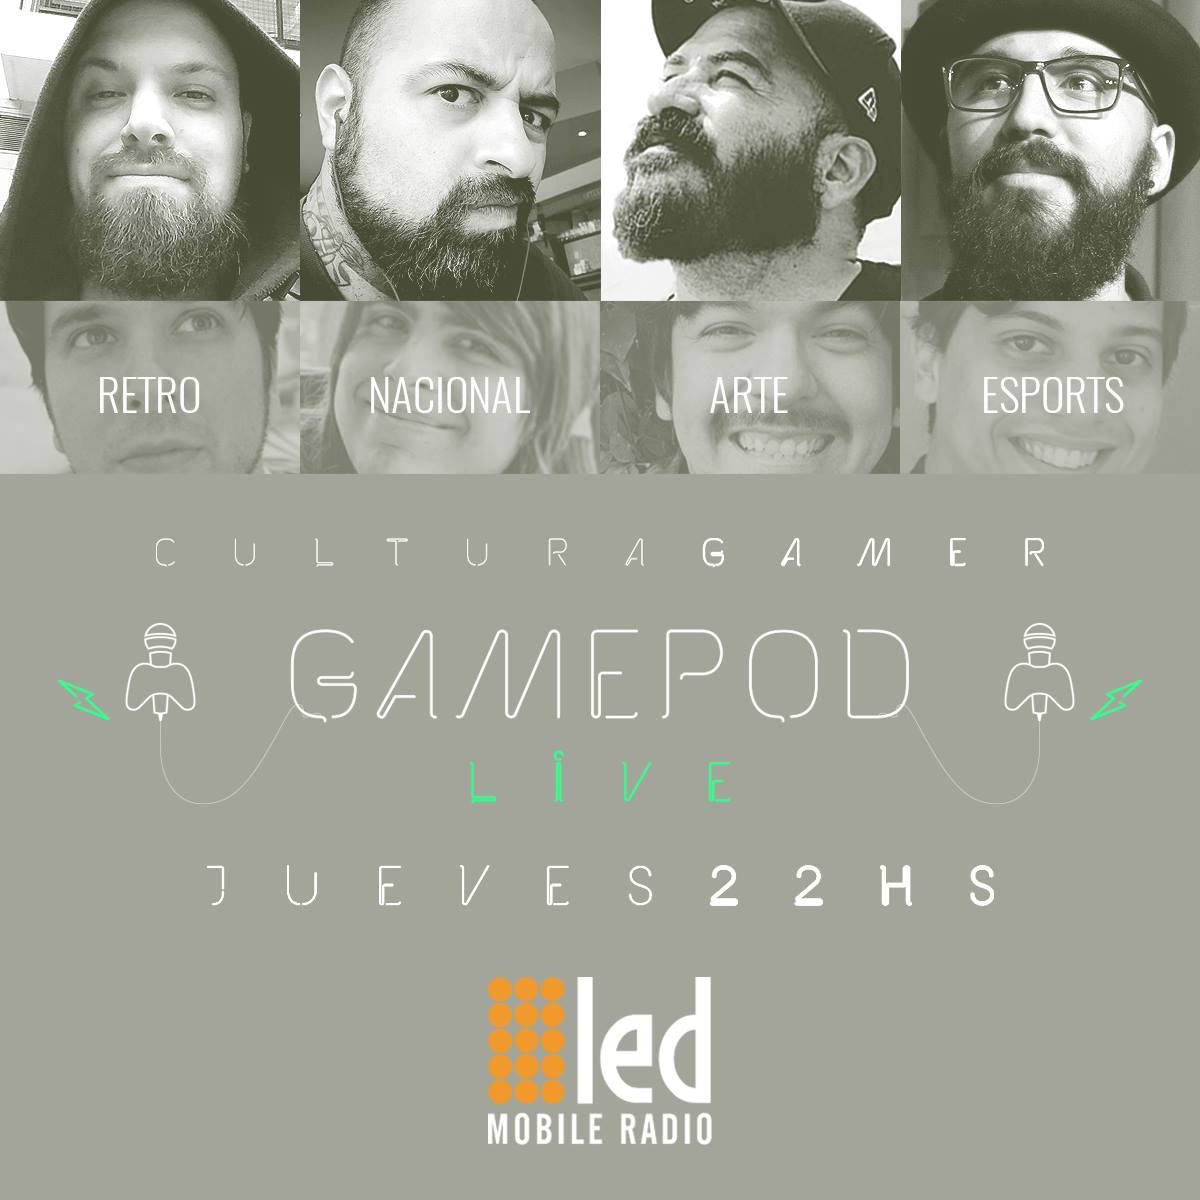 #Podcast GamePod 17.08: @KaneBlueriverCL en piso #eSports #FightingGames / Además @GuilloLeoz